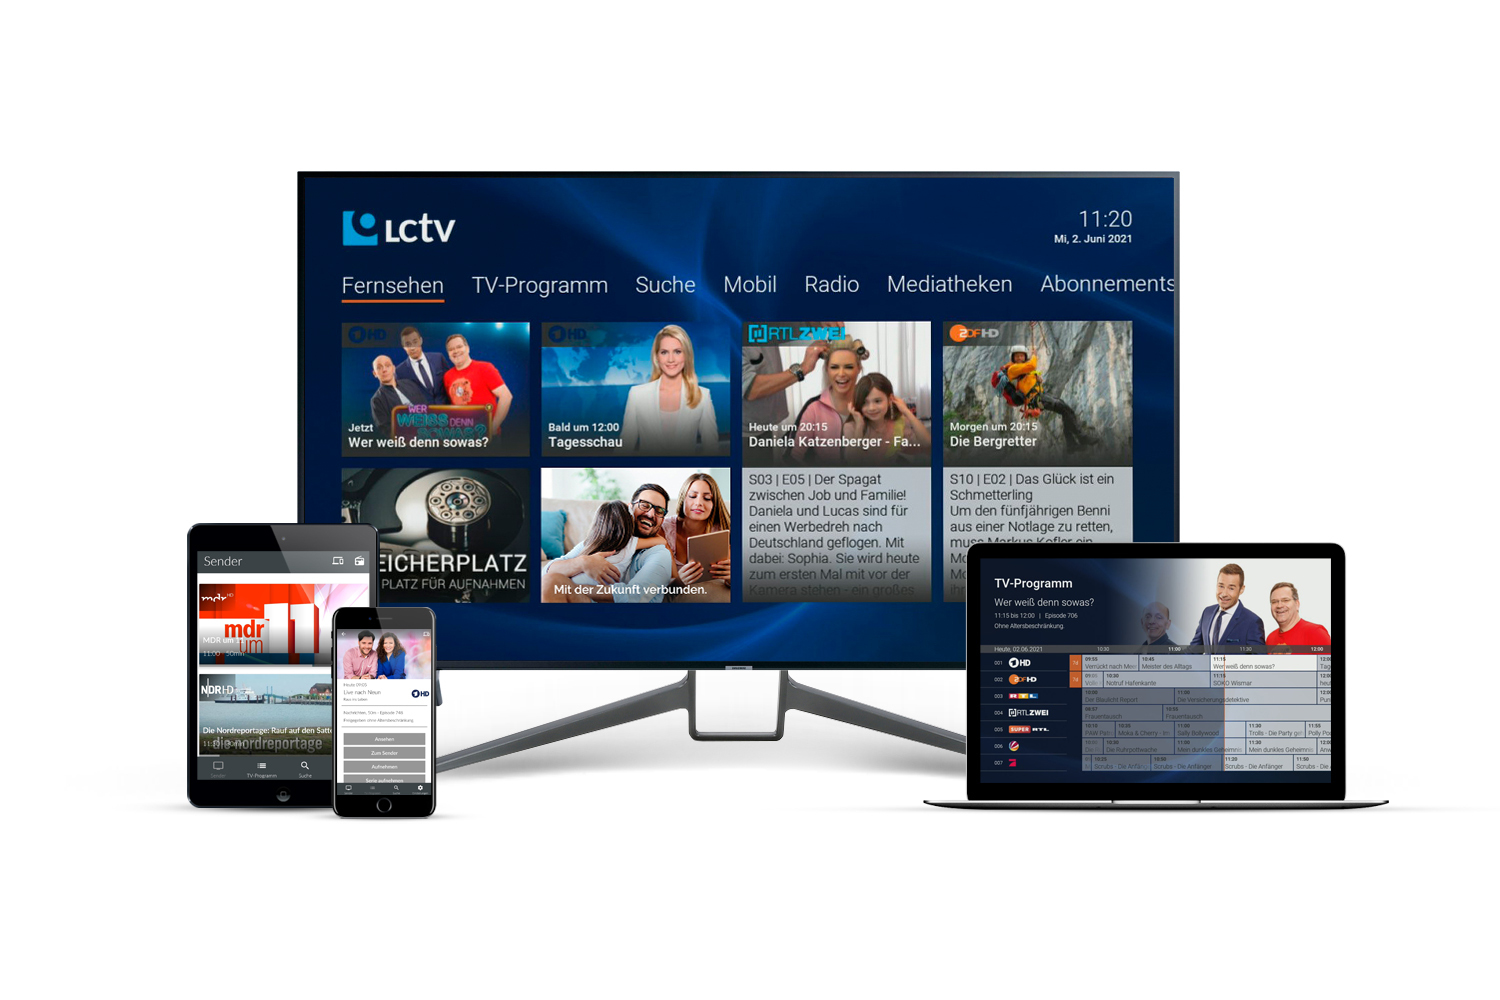 Collage von Device Optionen wie Fernseher, Laptop, Handy oder Tablett um LCTV online zu schauen.